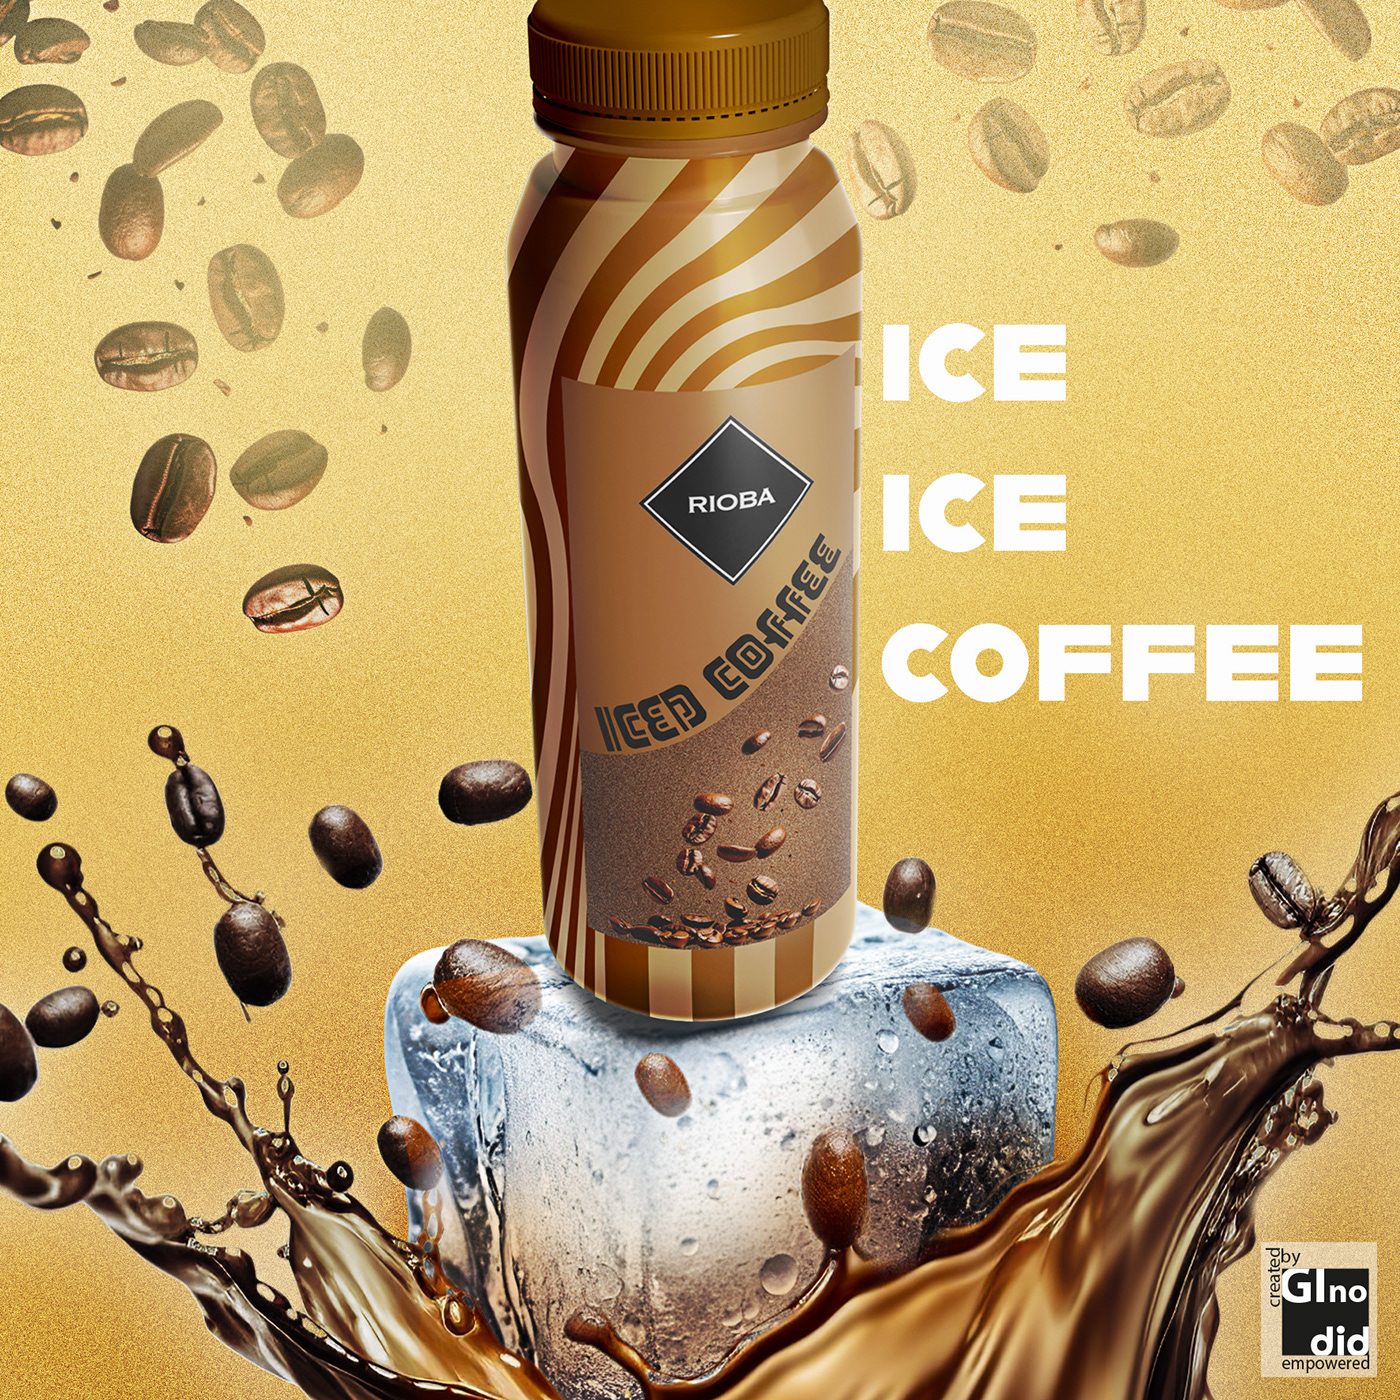 Coffee iced coffee beverage Ice Coffee